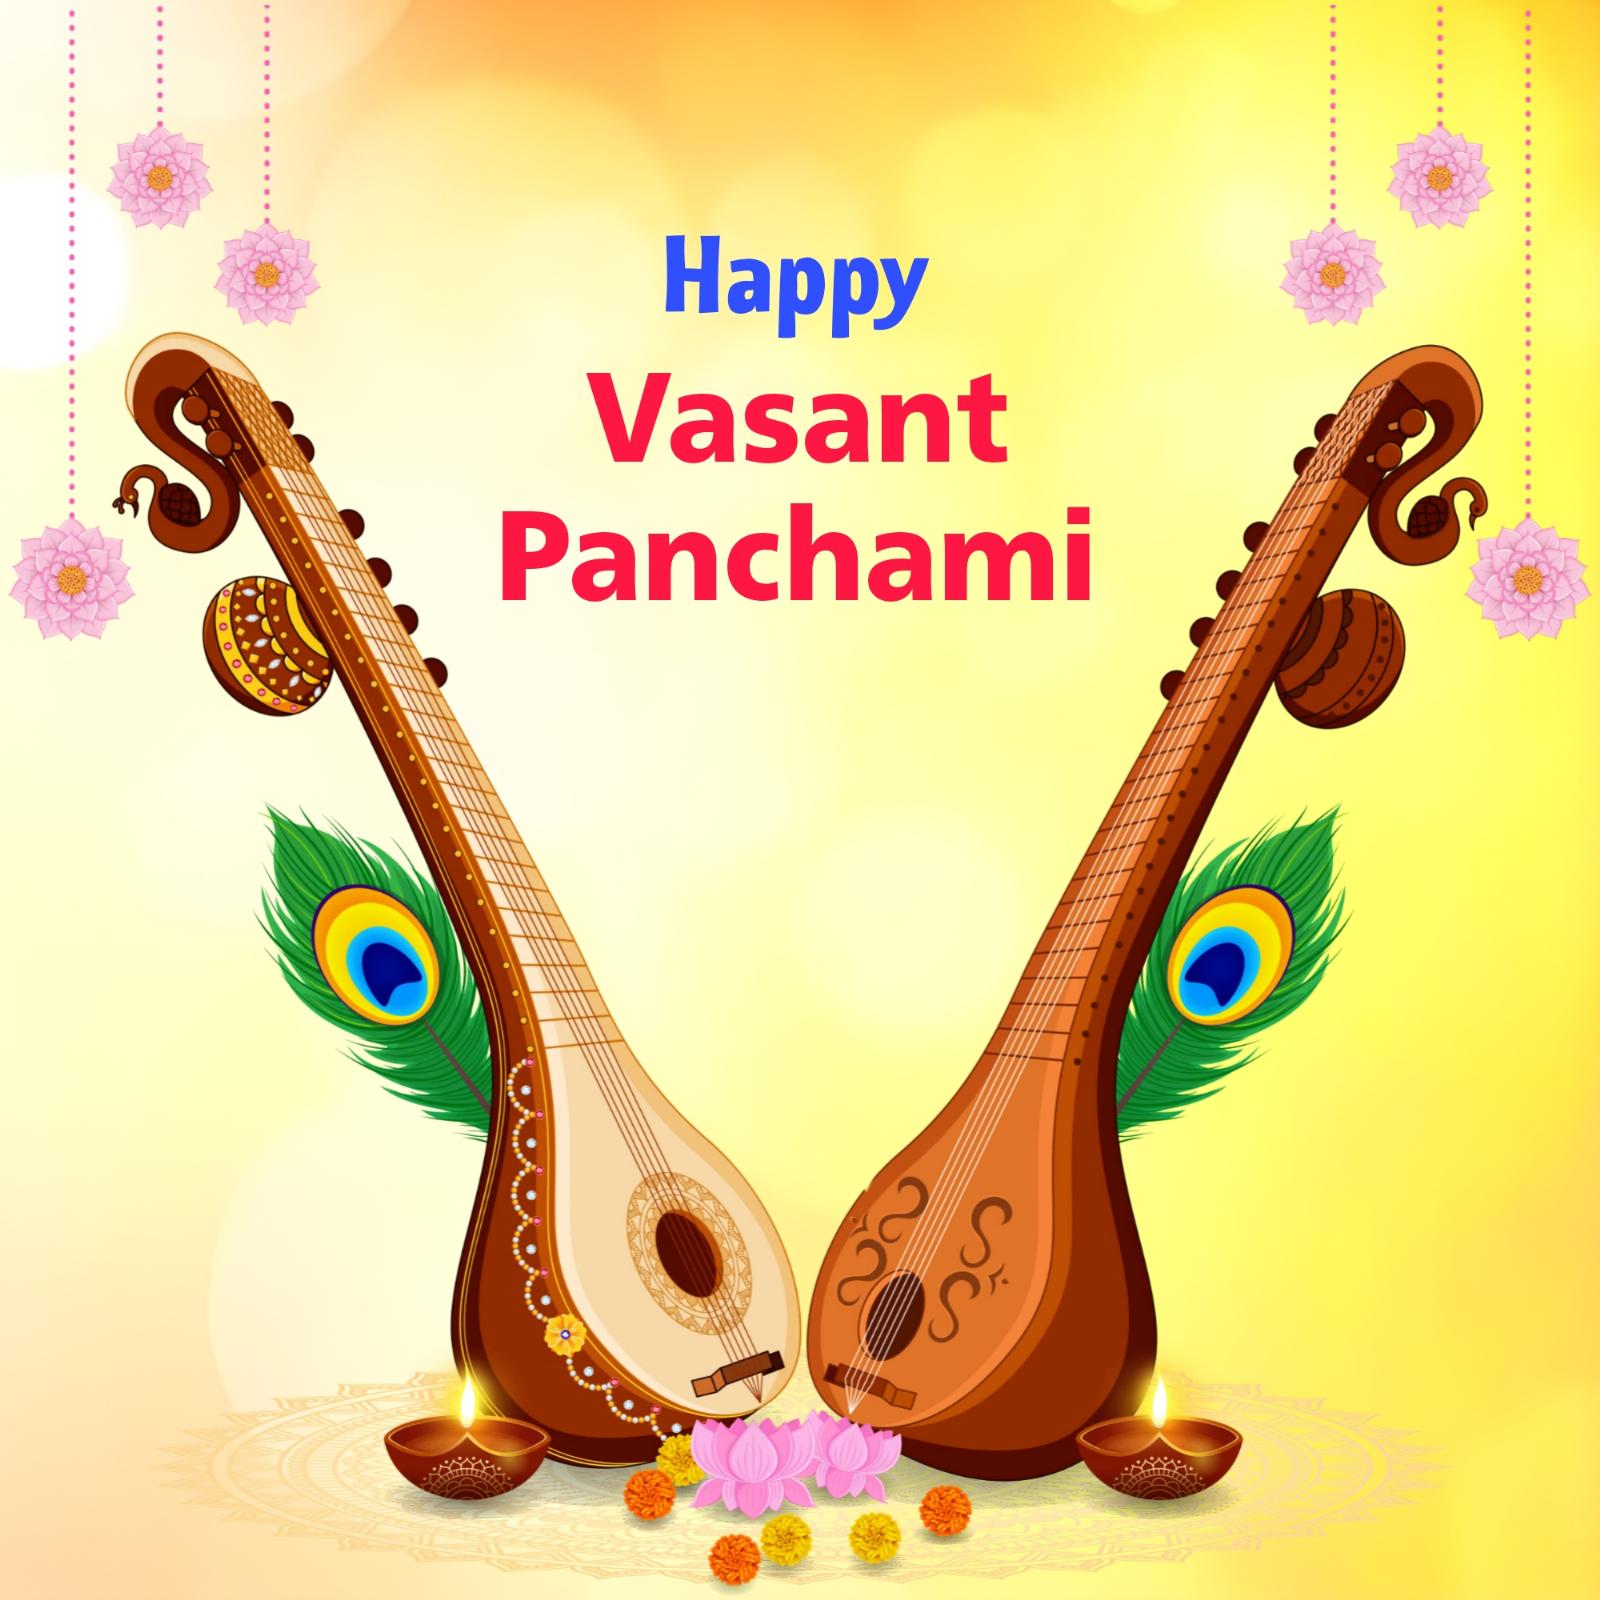 Happy Basant Panchmi Image